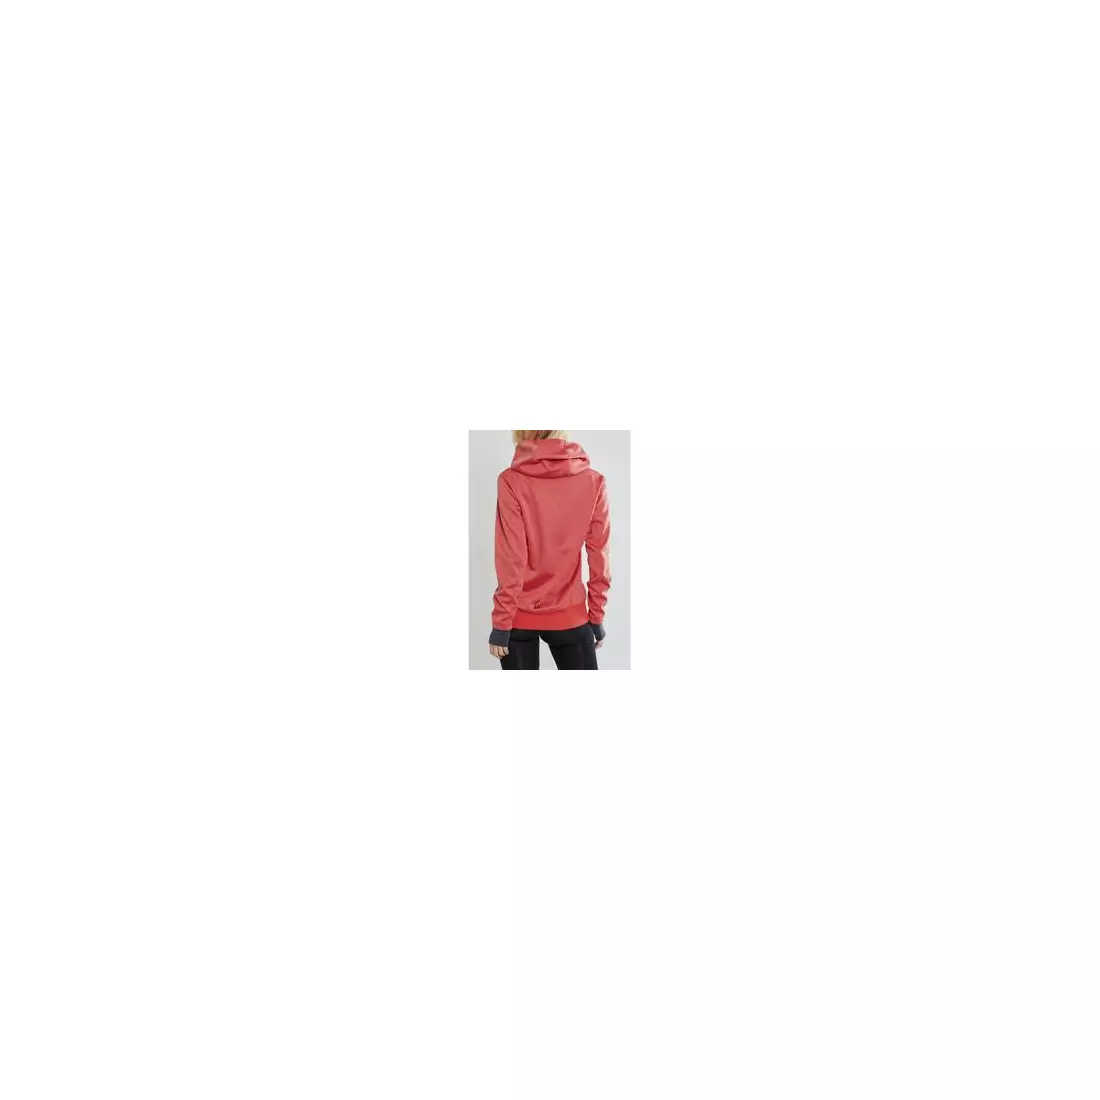 CRAFT SPORTS FLEECE ASSYMETRIC bluza sportowa damska różowa 1908010-481200